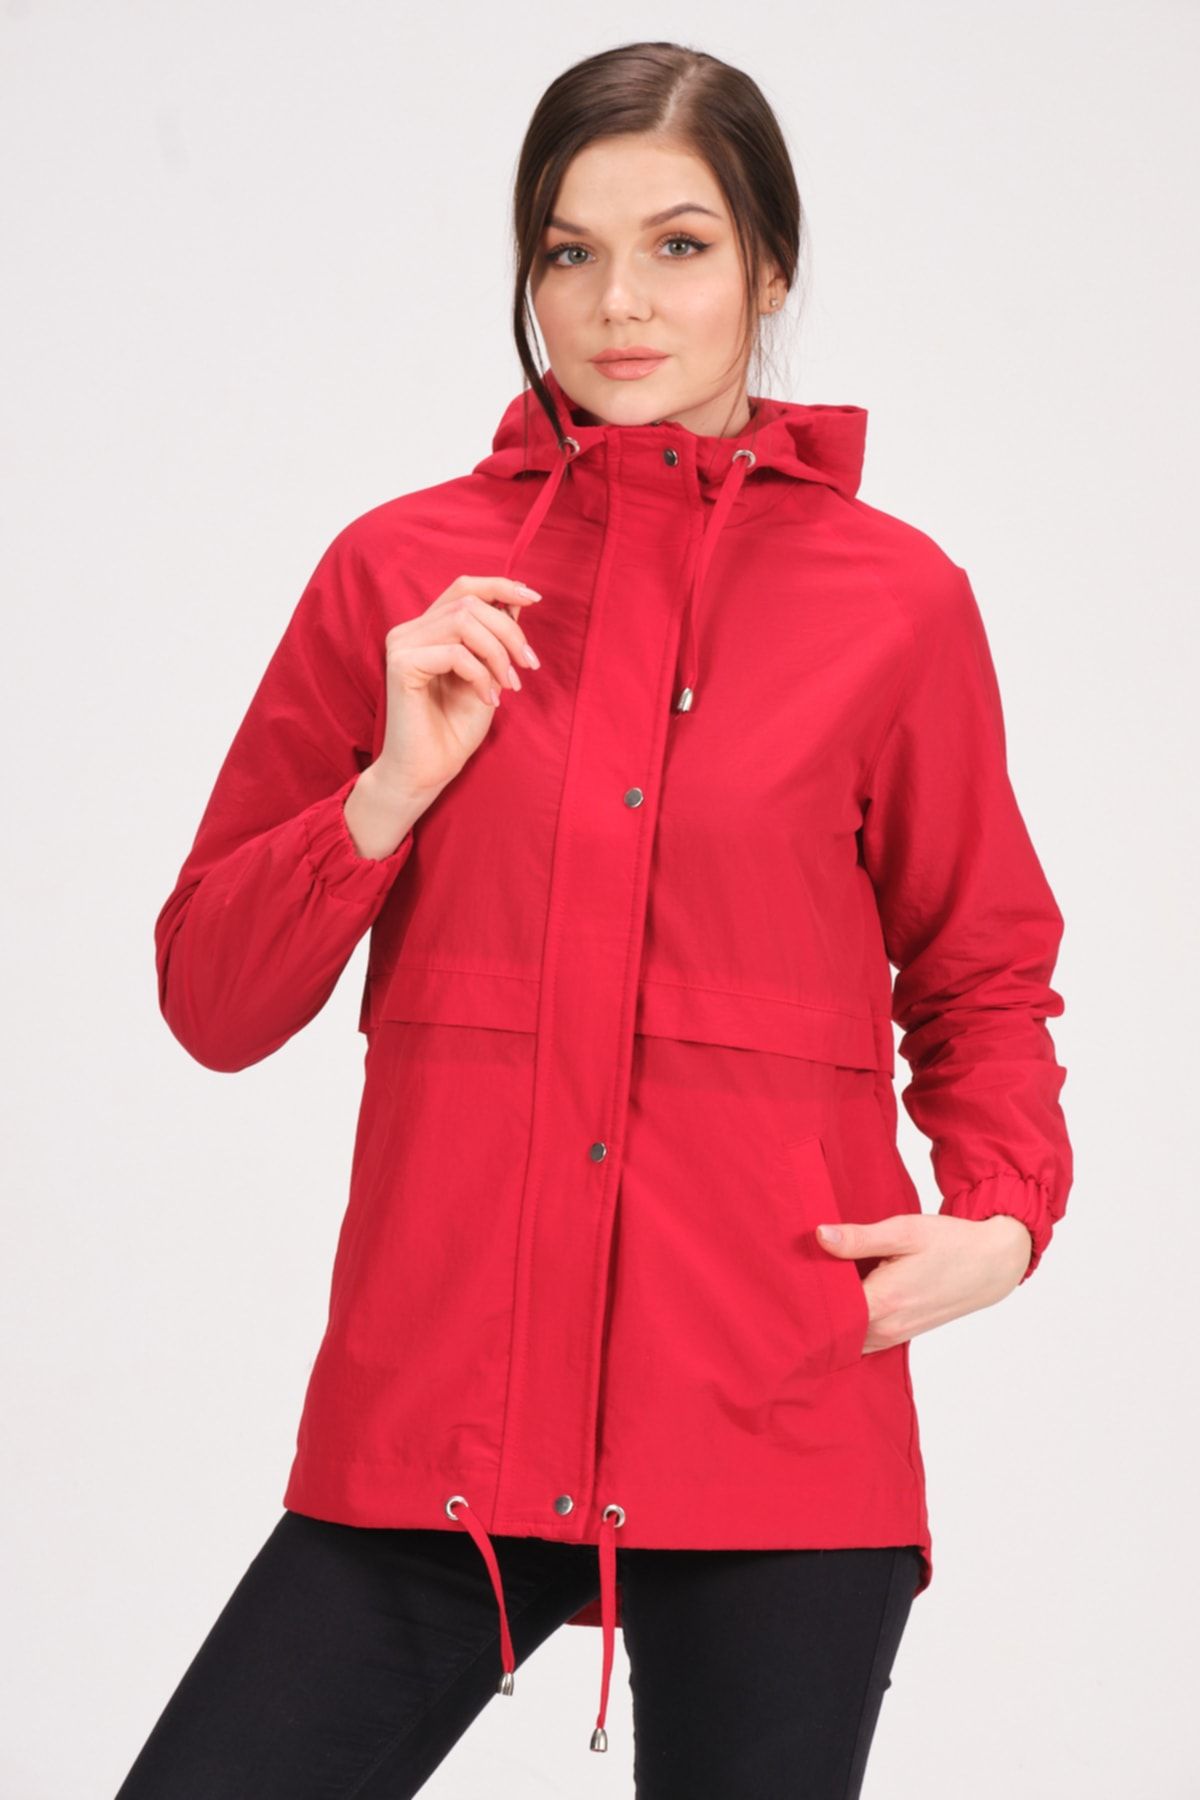 PIQUE Kadın Kırmızı Mont Kapüşonlu Astarsız Yağmurluk Gılmore Kadın Yağmurluk